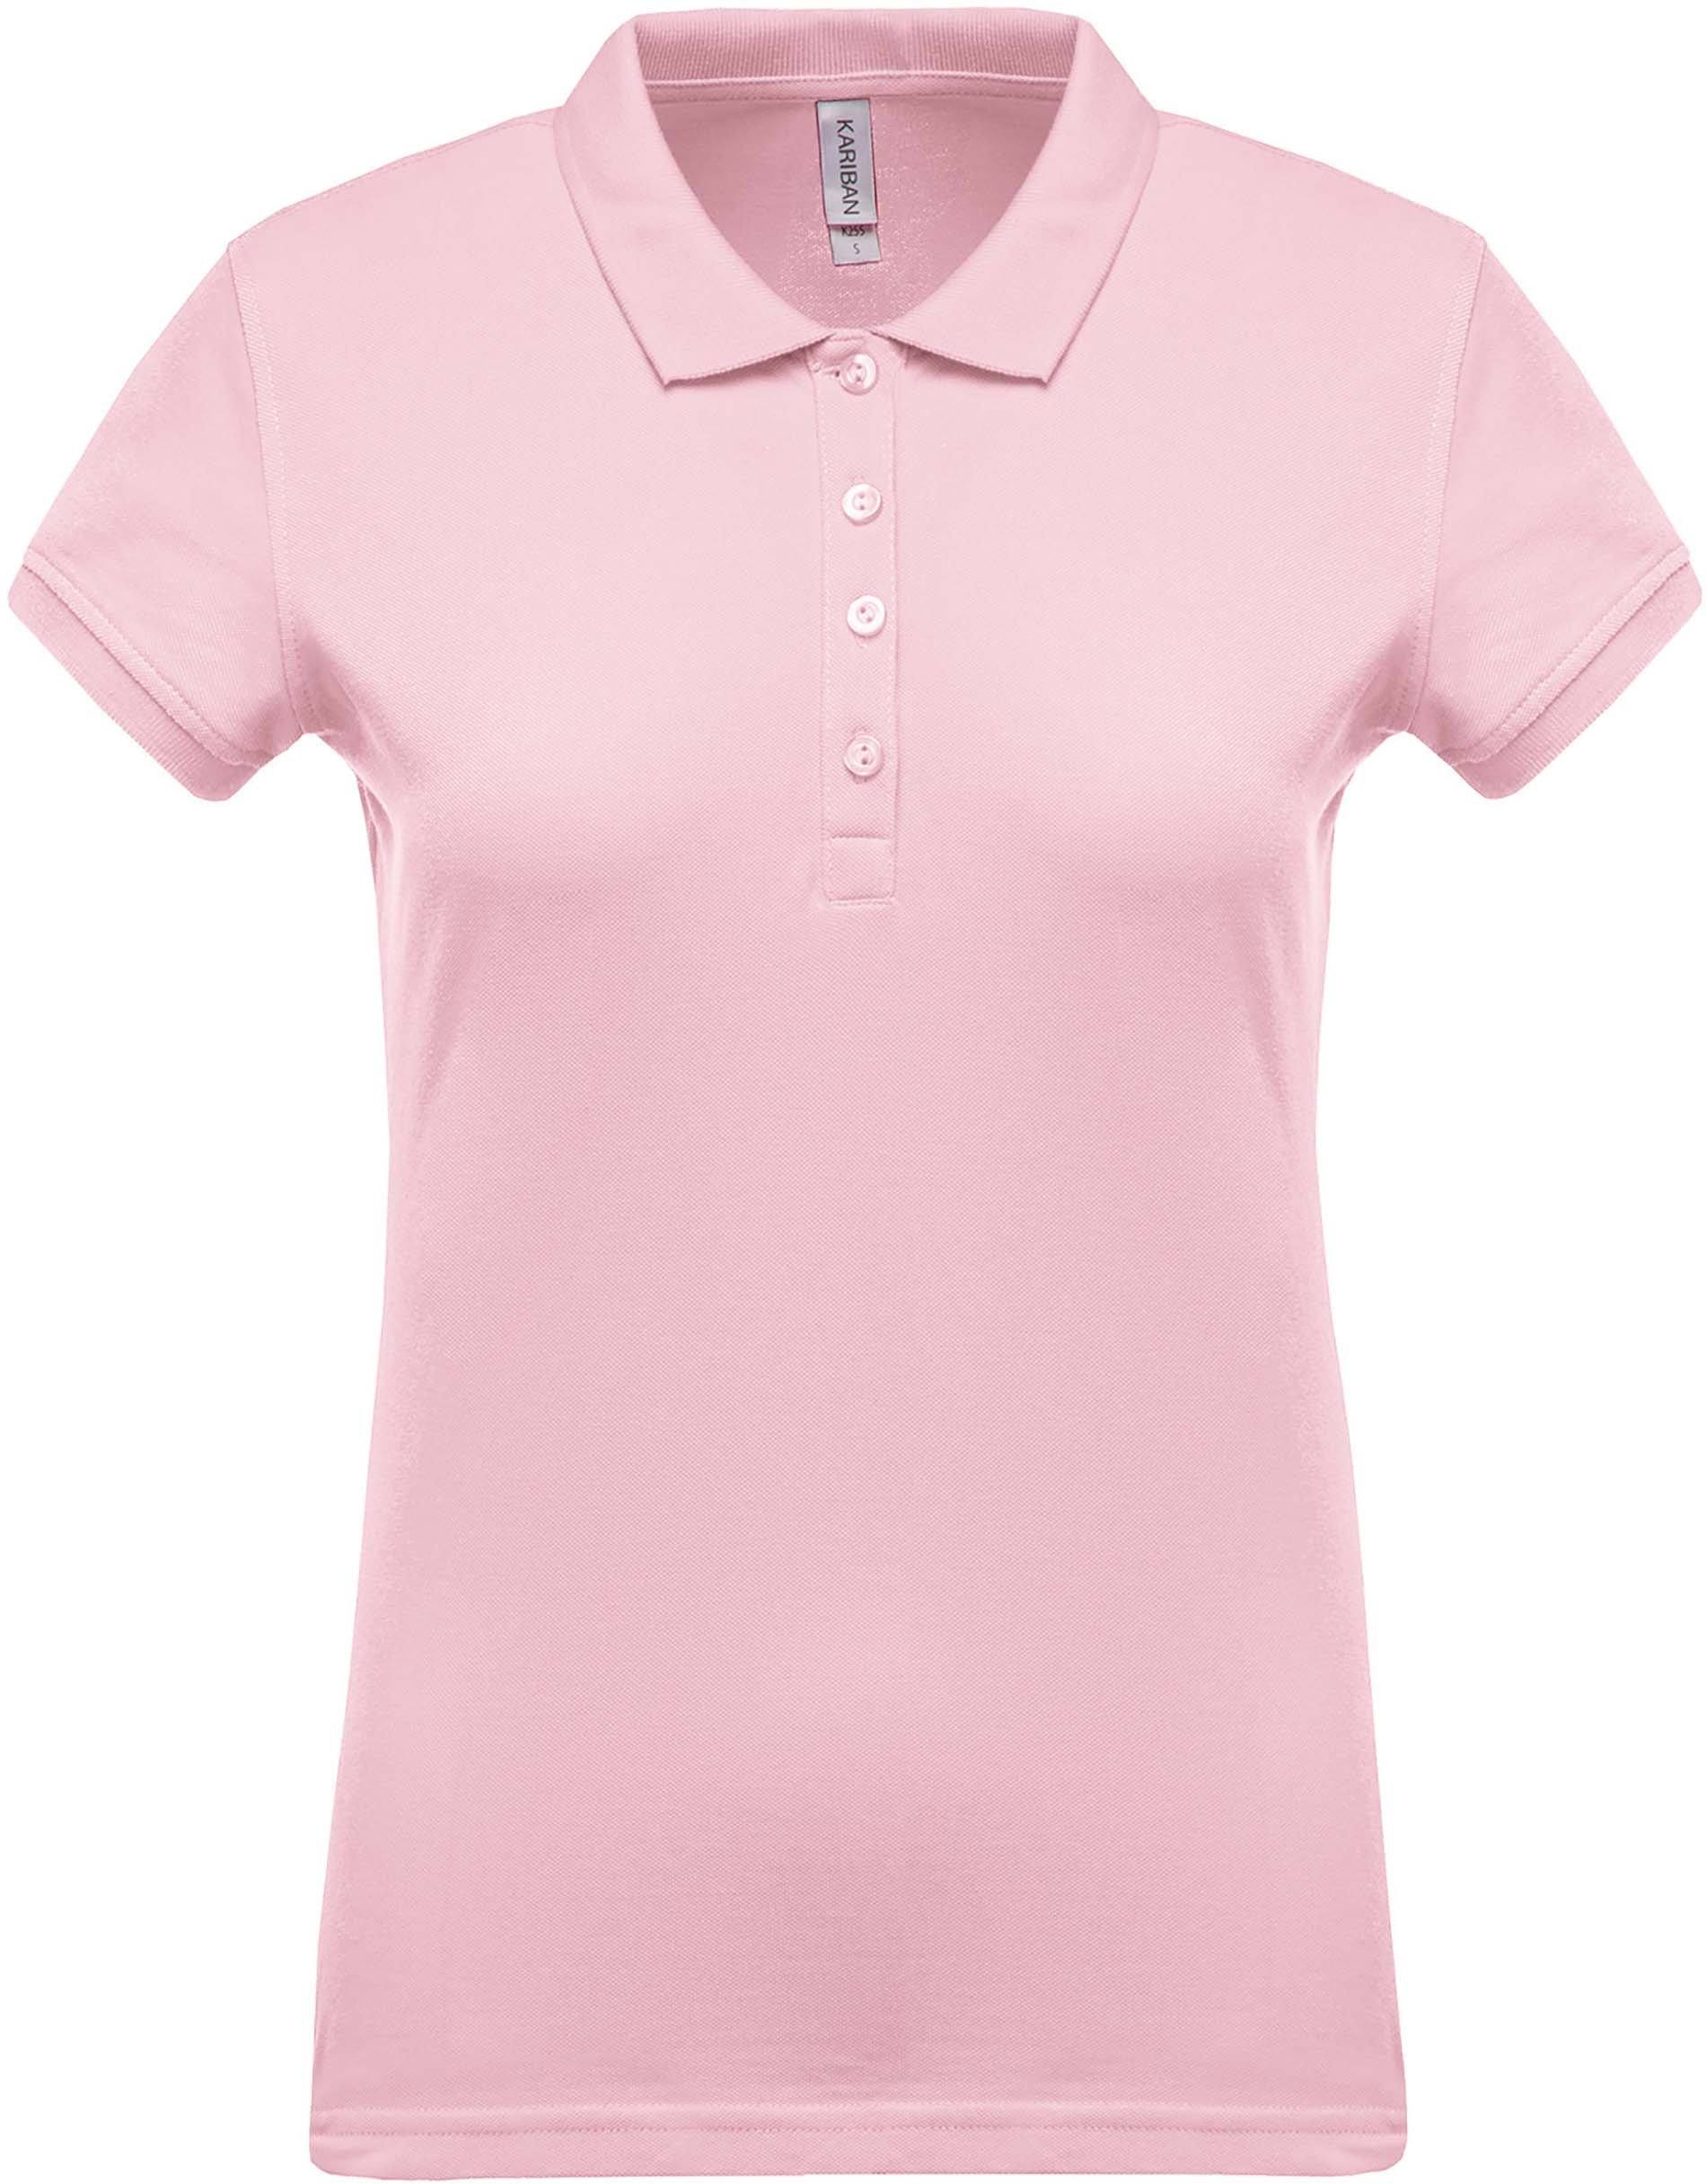 Polo personnalisé piqué manches courtes golf team - K255 couleurs originales polo femme Kariban pale pink XS 